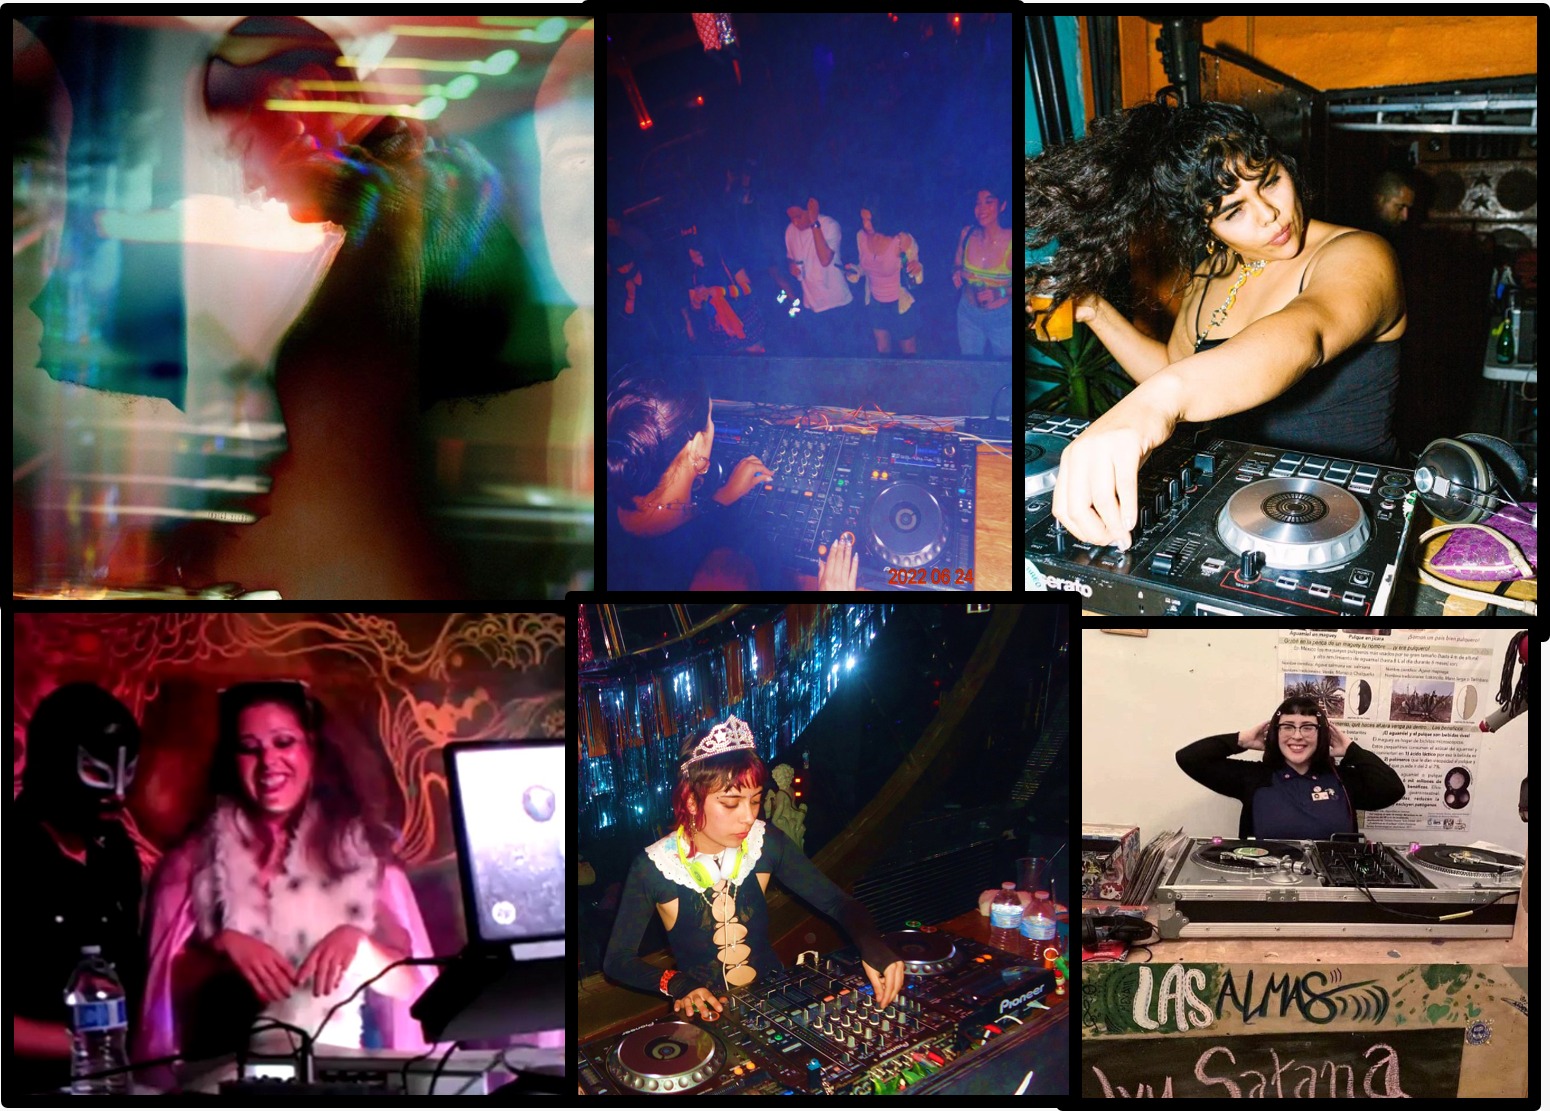 Mujeres DJs en Tijuana: crecimiento y desafíos de seguridad